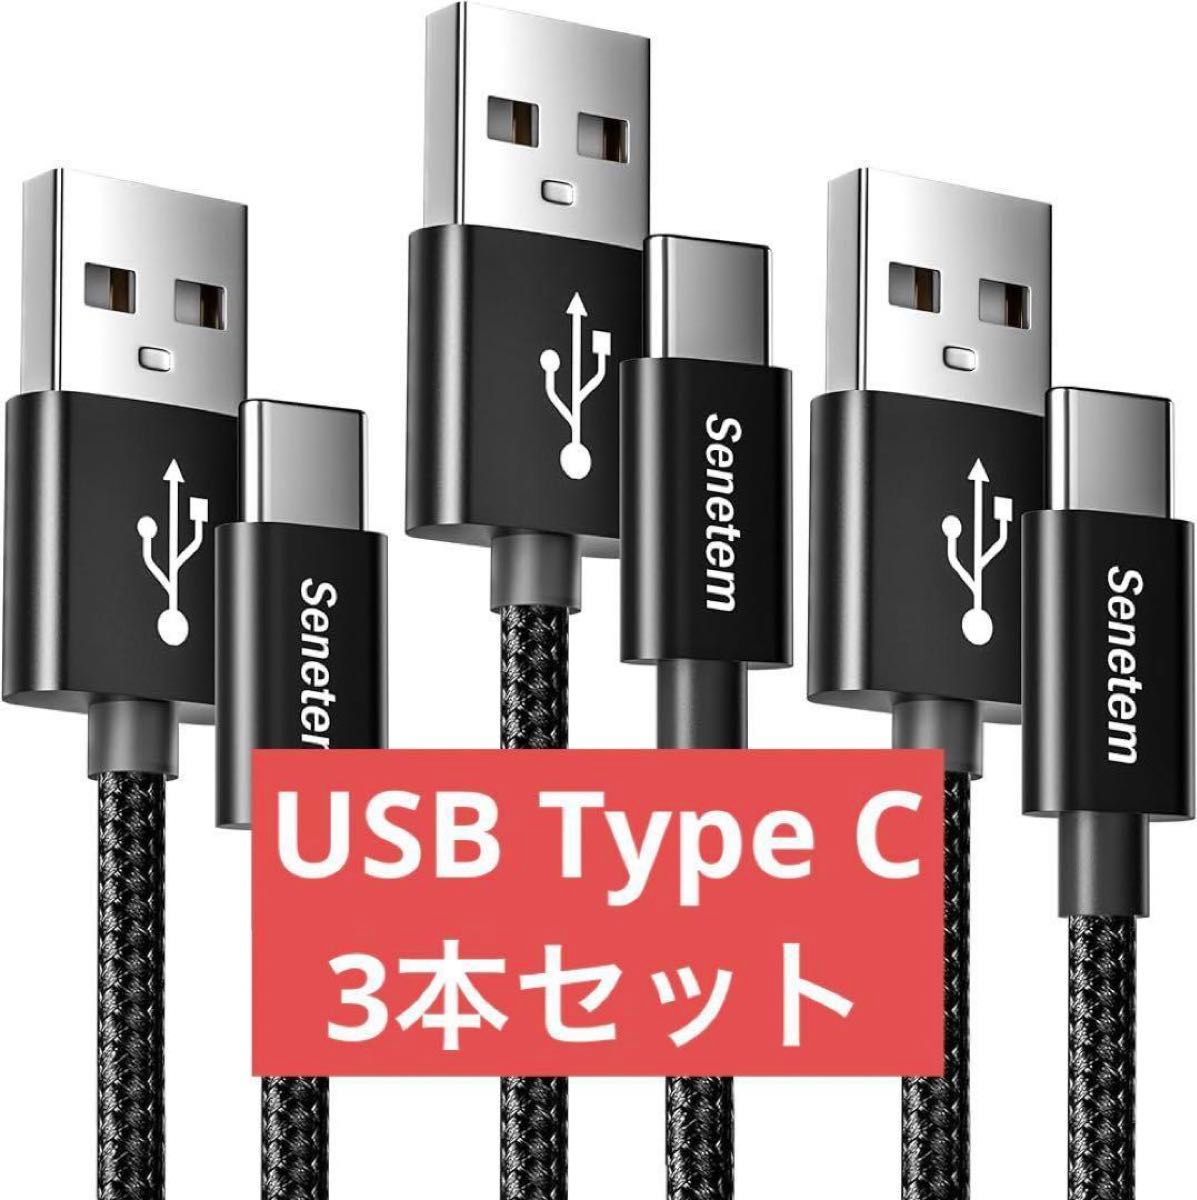 ★匿名配送★USB Type C ケーブル 耐久性 スマホ充電 タブレット 3本 スマホ充電ケーブル Sony Xperia、